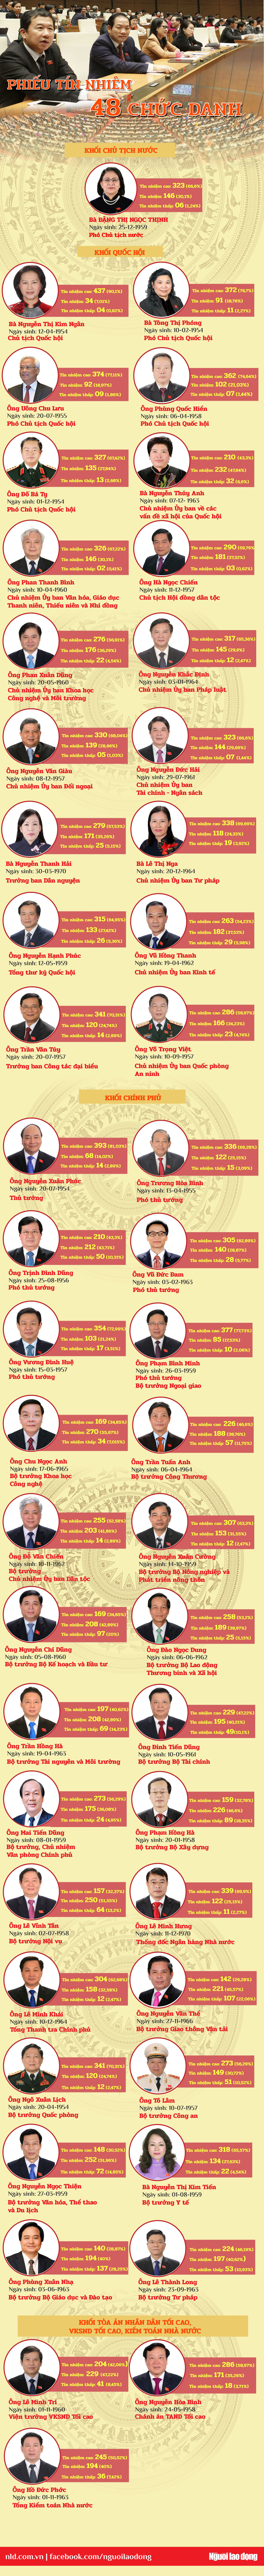 [Infographic] Kết quả tín nhiệm 48 người được Quốc hội bầu và phê chuẩn - Ảnh 1.